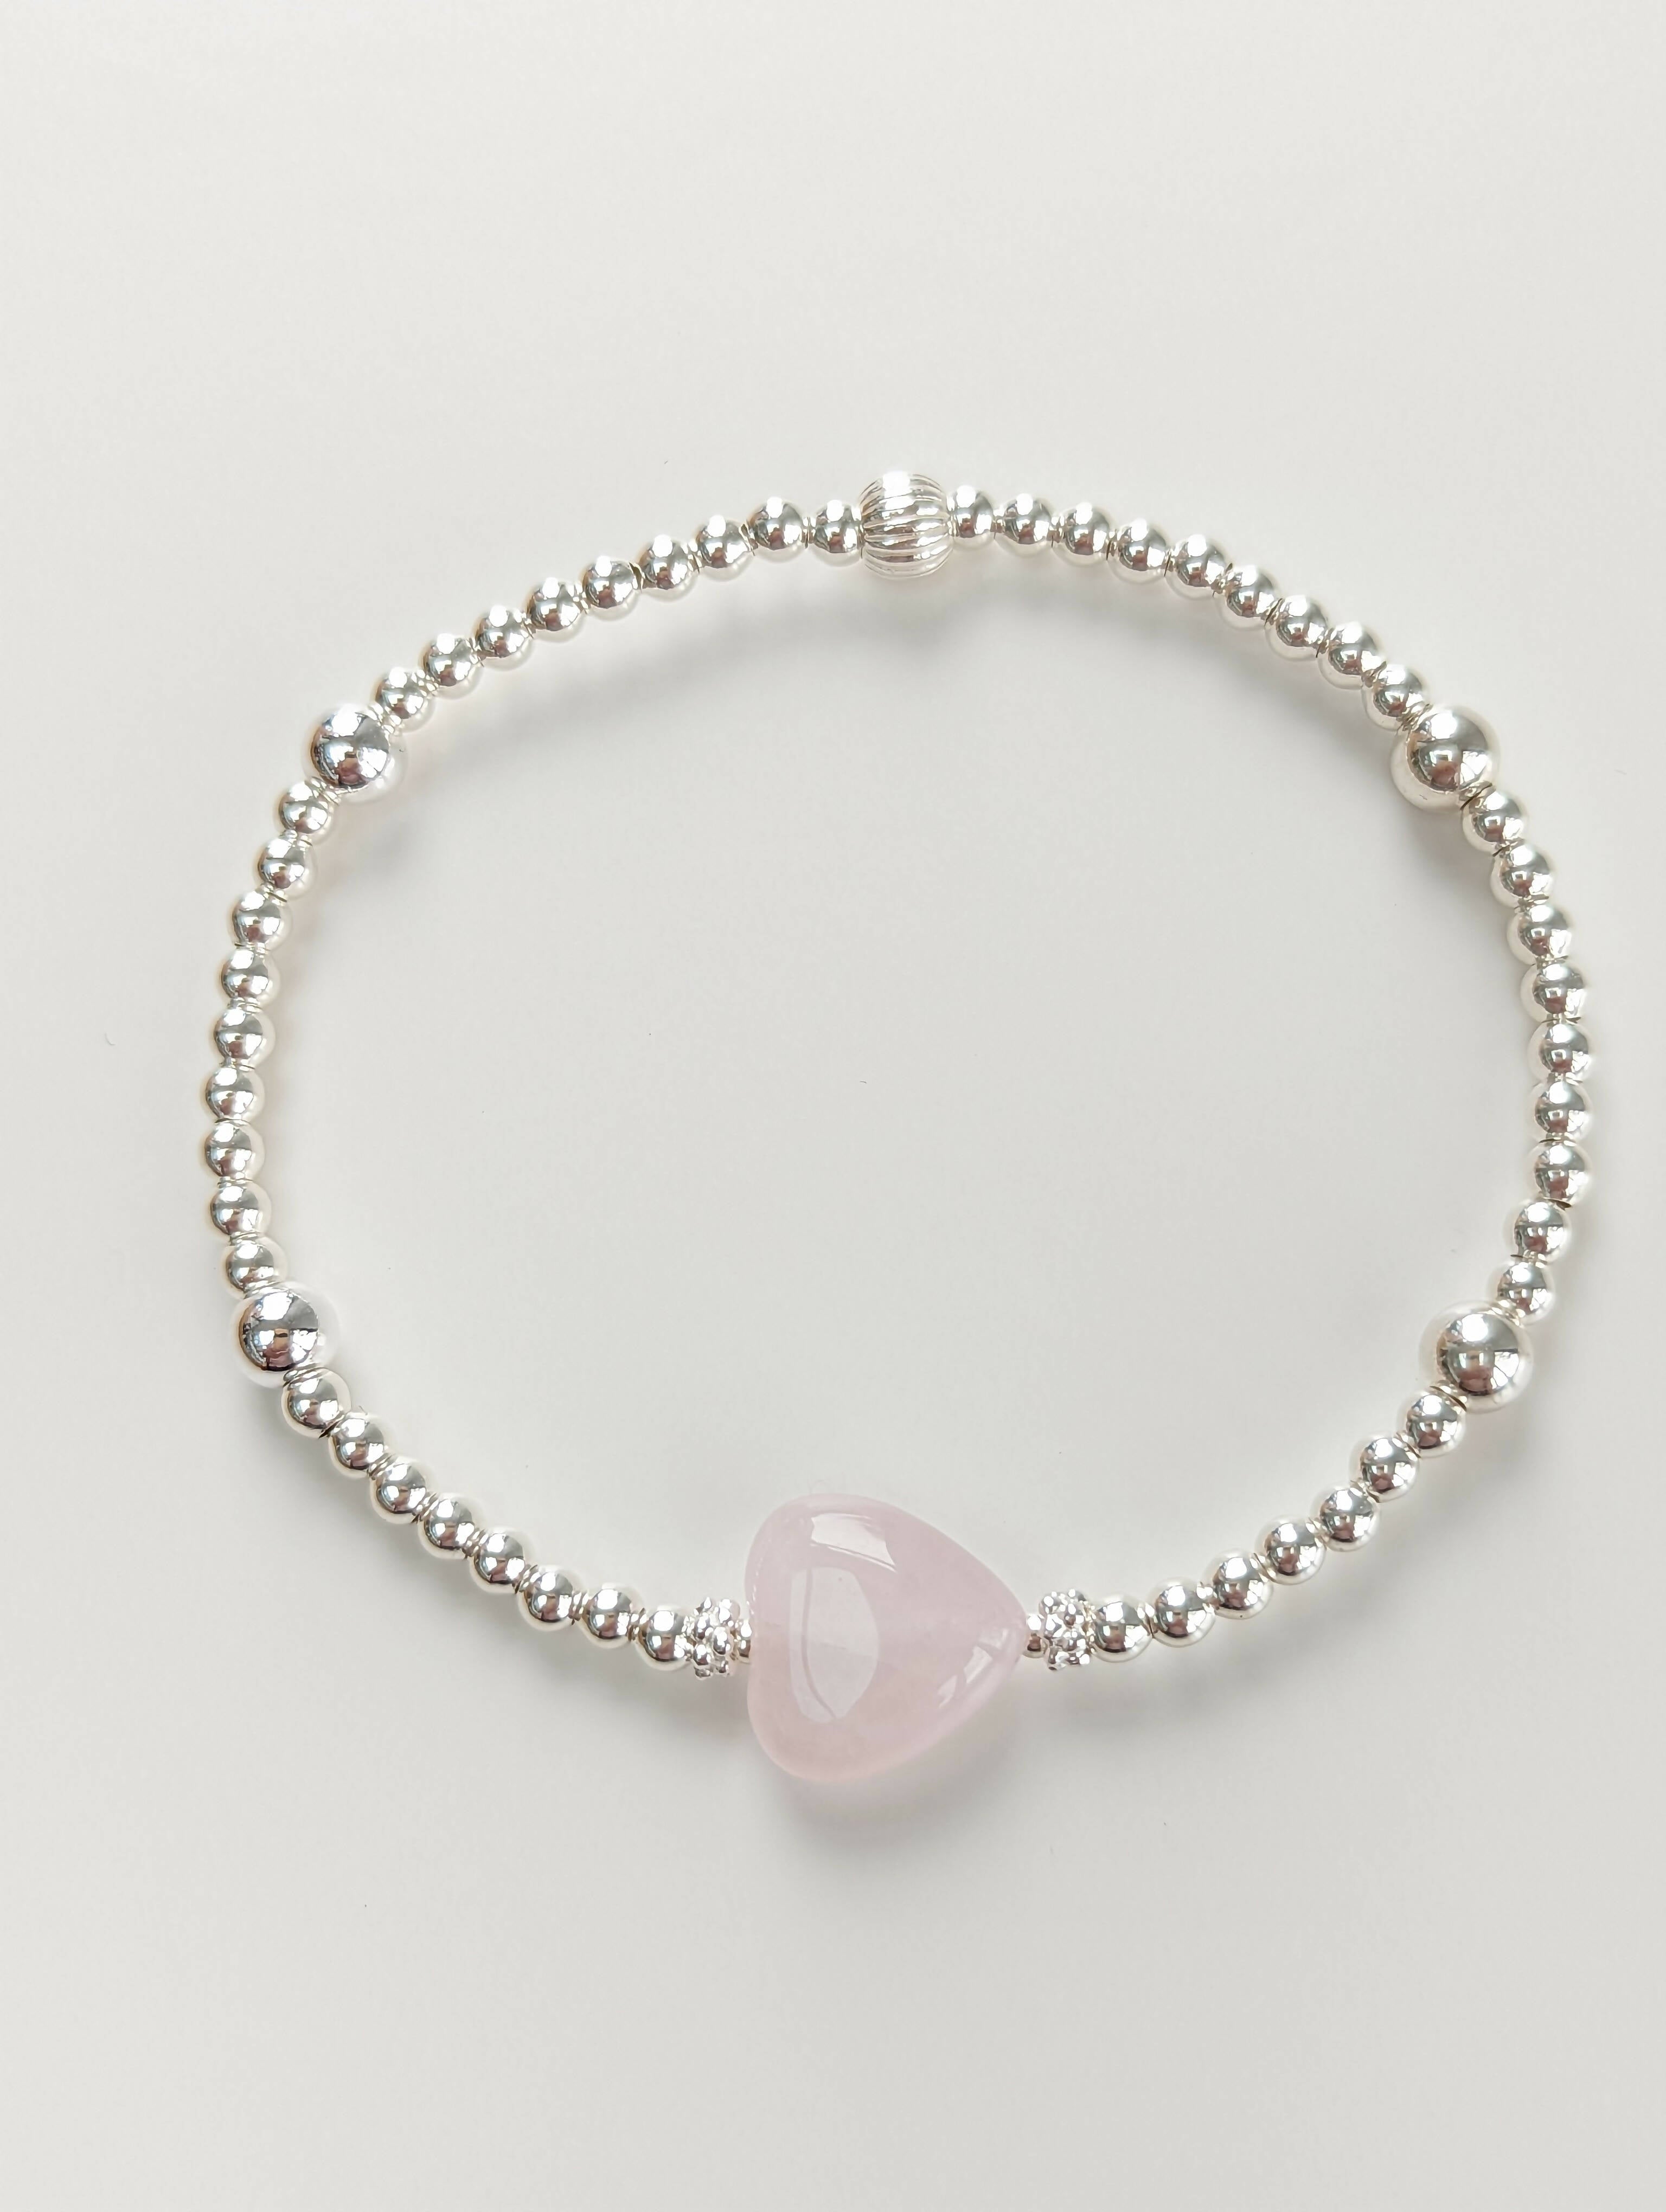 Rose quartz heart satellite bracelet - Handmade